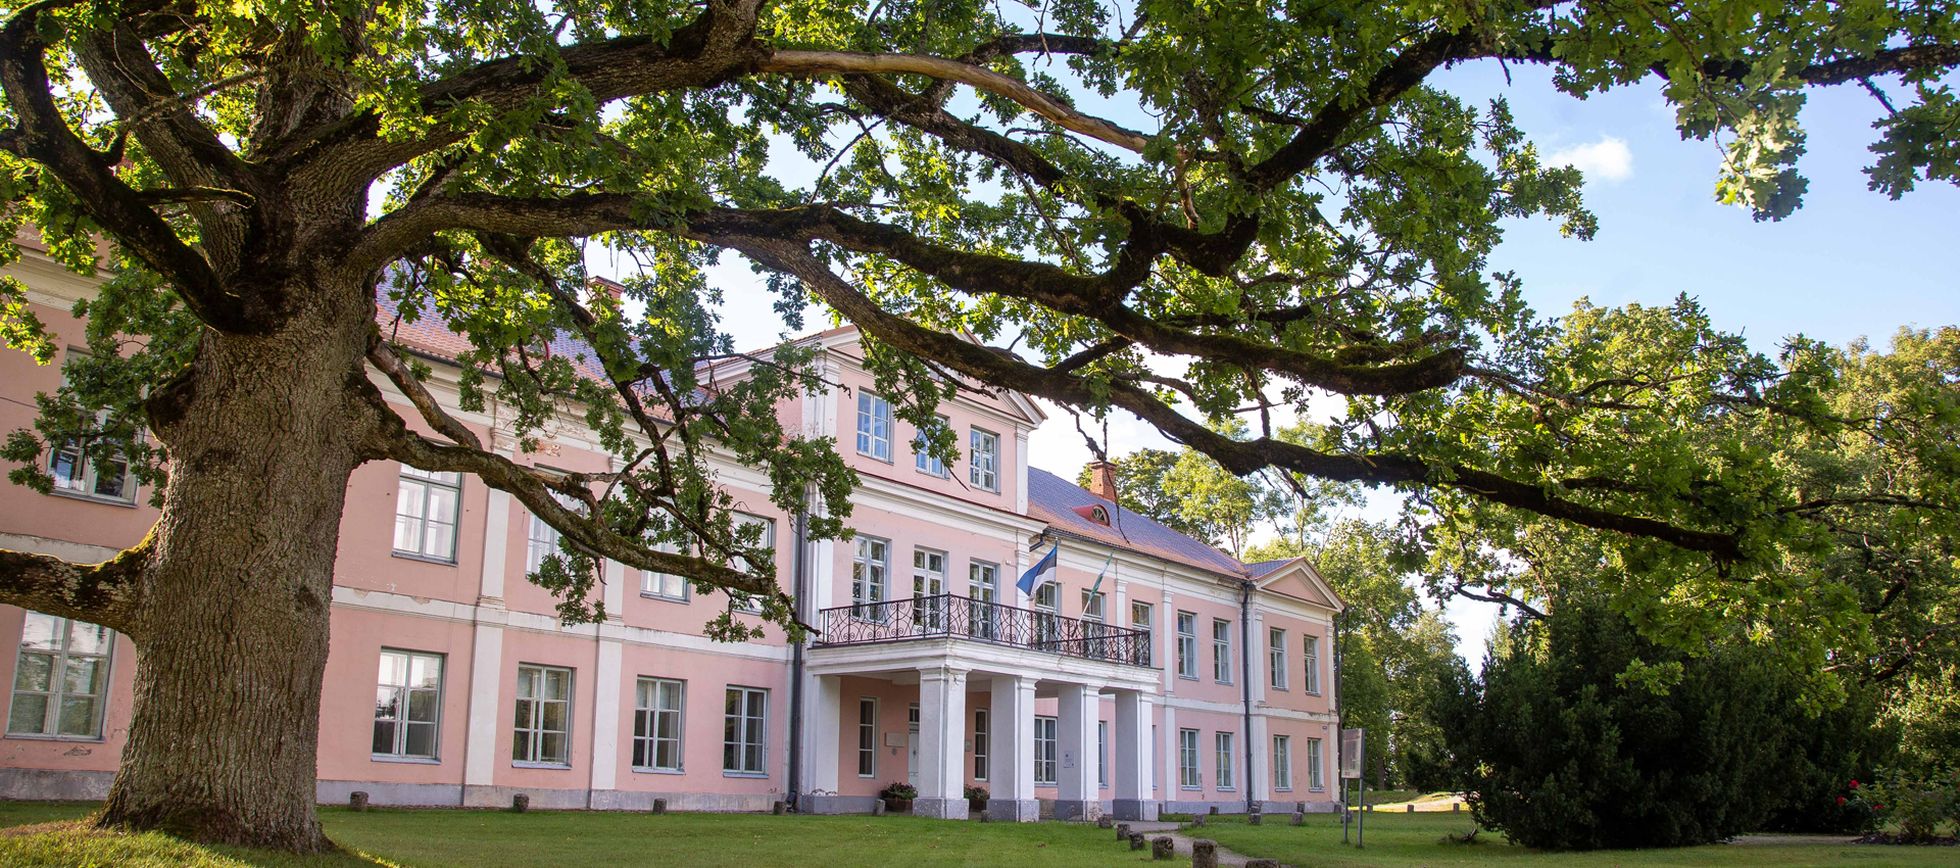 1774. aastast pärit Kabala mõisas on haridust antud juba 1923. aastast. Ka paegu on majas Retla-Kabala kool, millel on kuus klassi ja ka lasteaed.